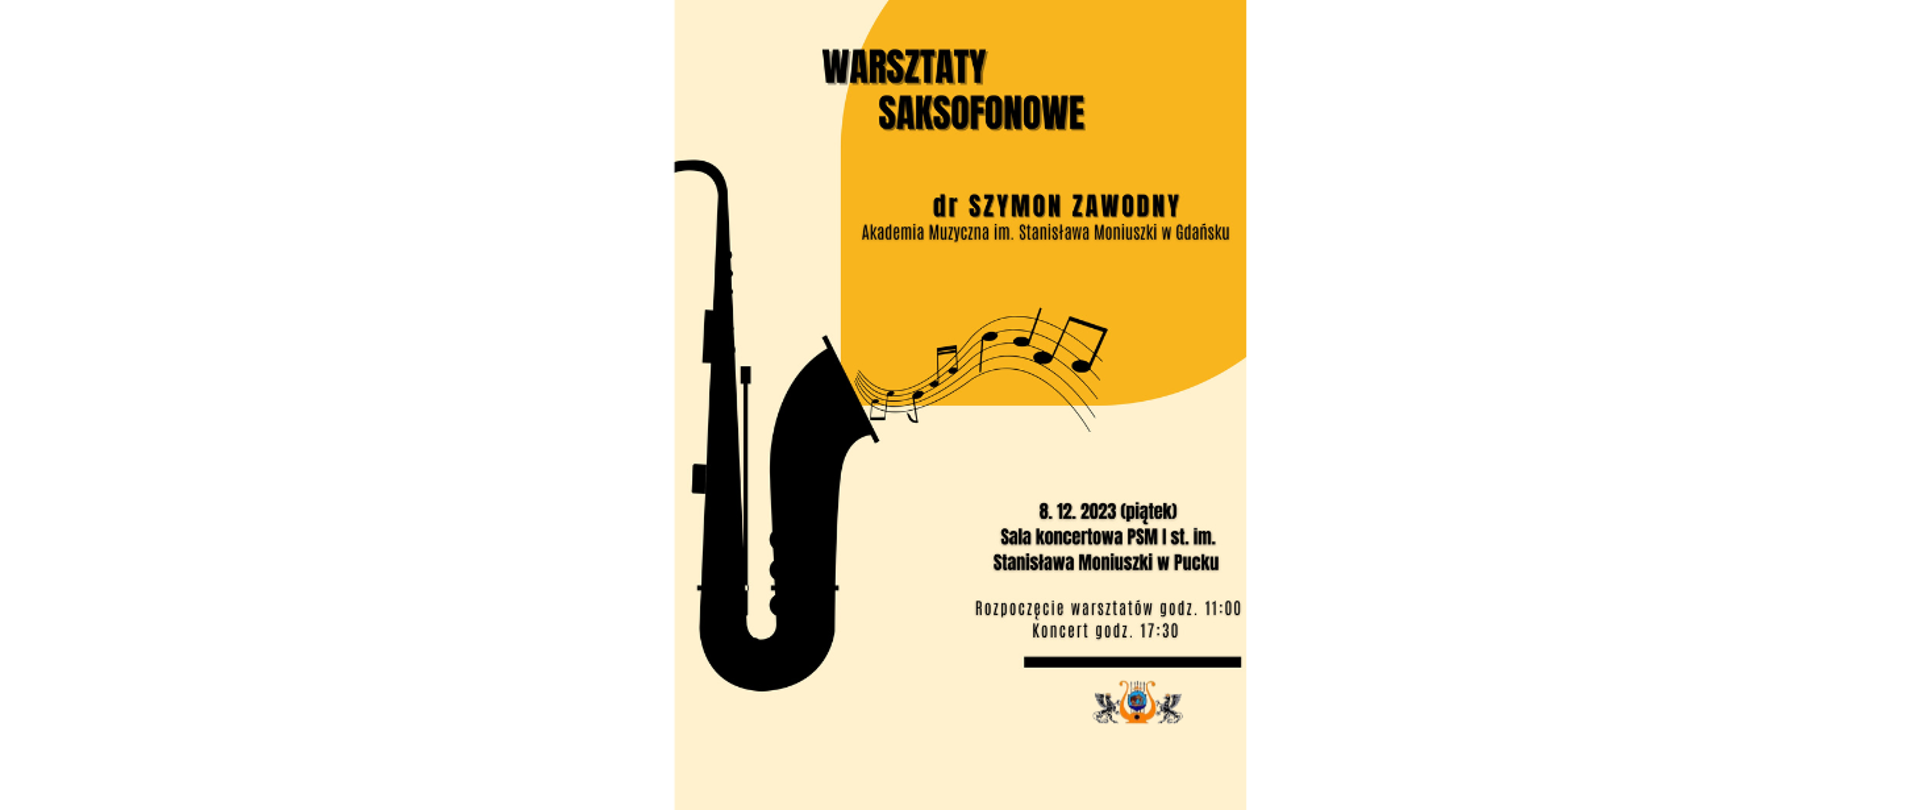 Warsztaty Saksofonowe 